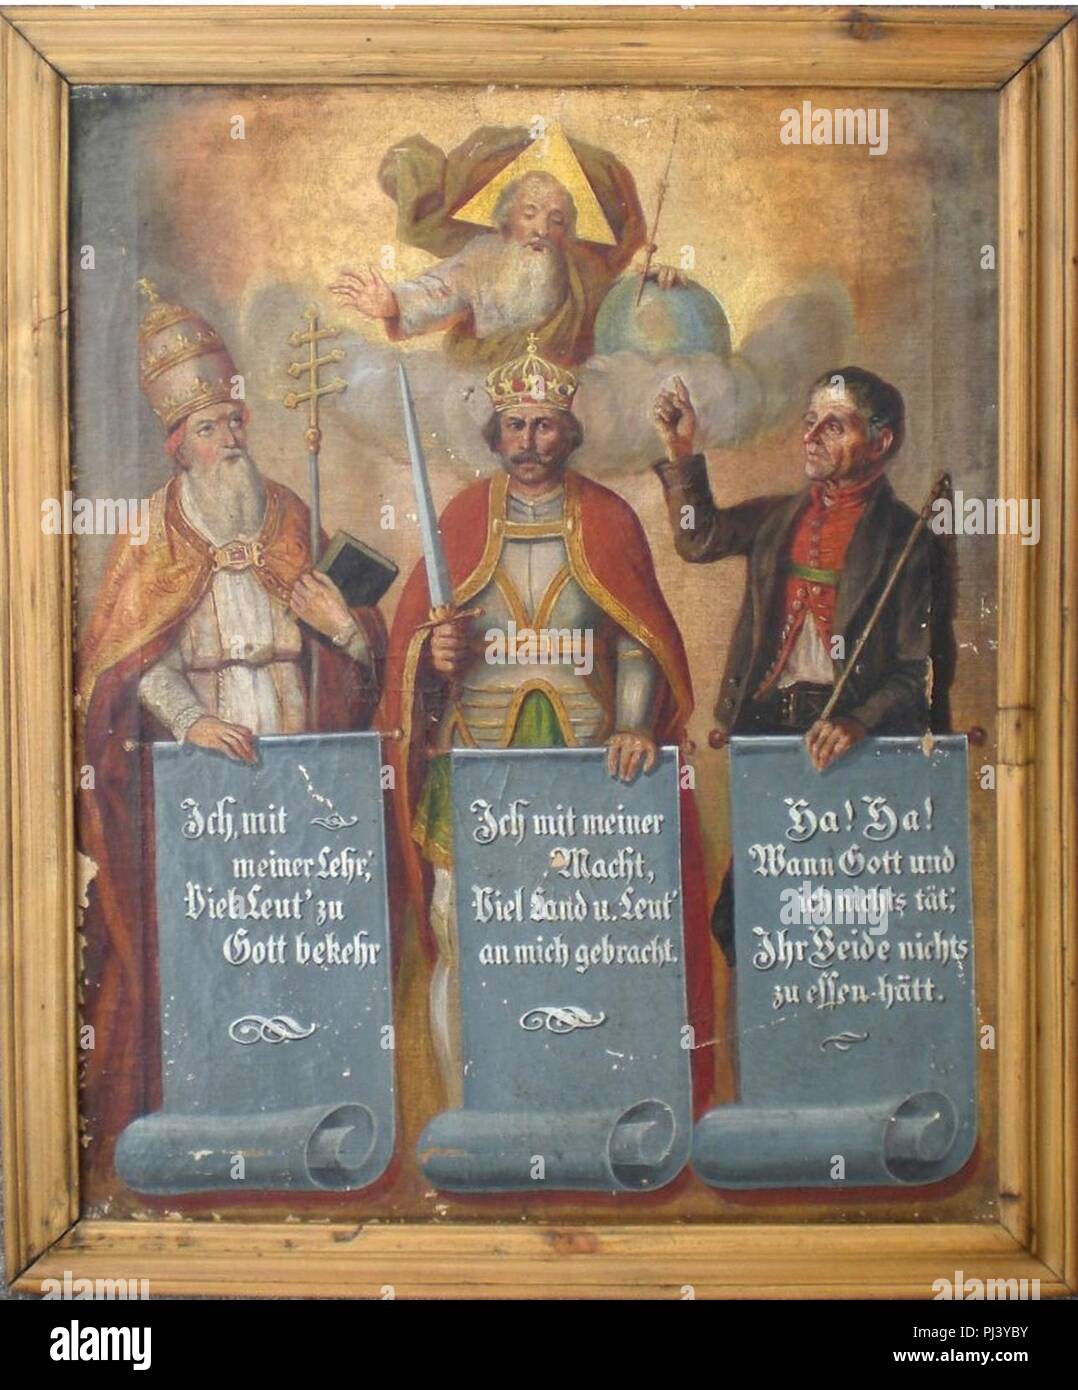 Balthasar Waltl - Gott und die drei Geburtsstände - Klerus, Adel und Bauern. Stock Photo